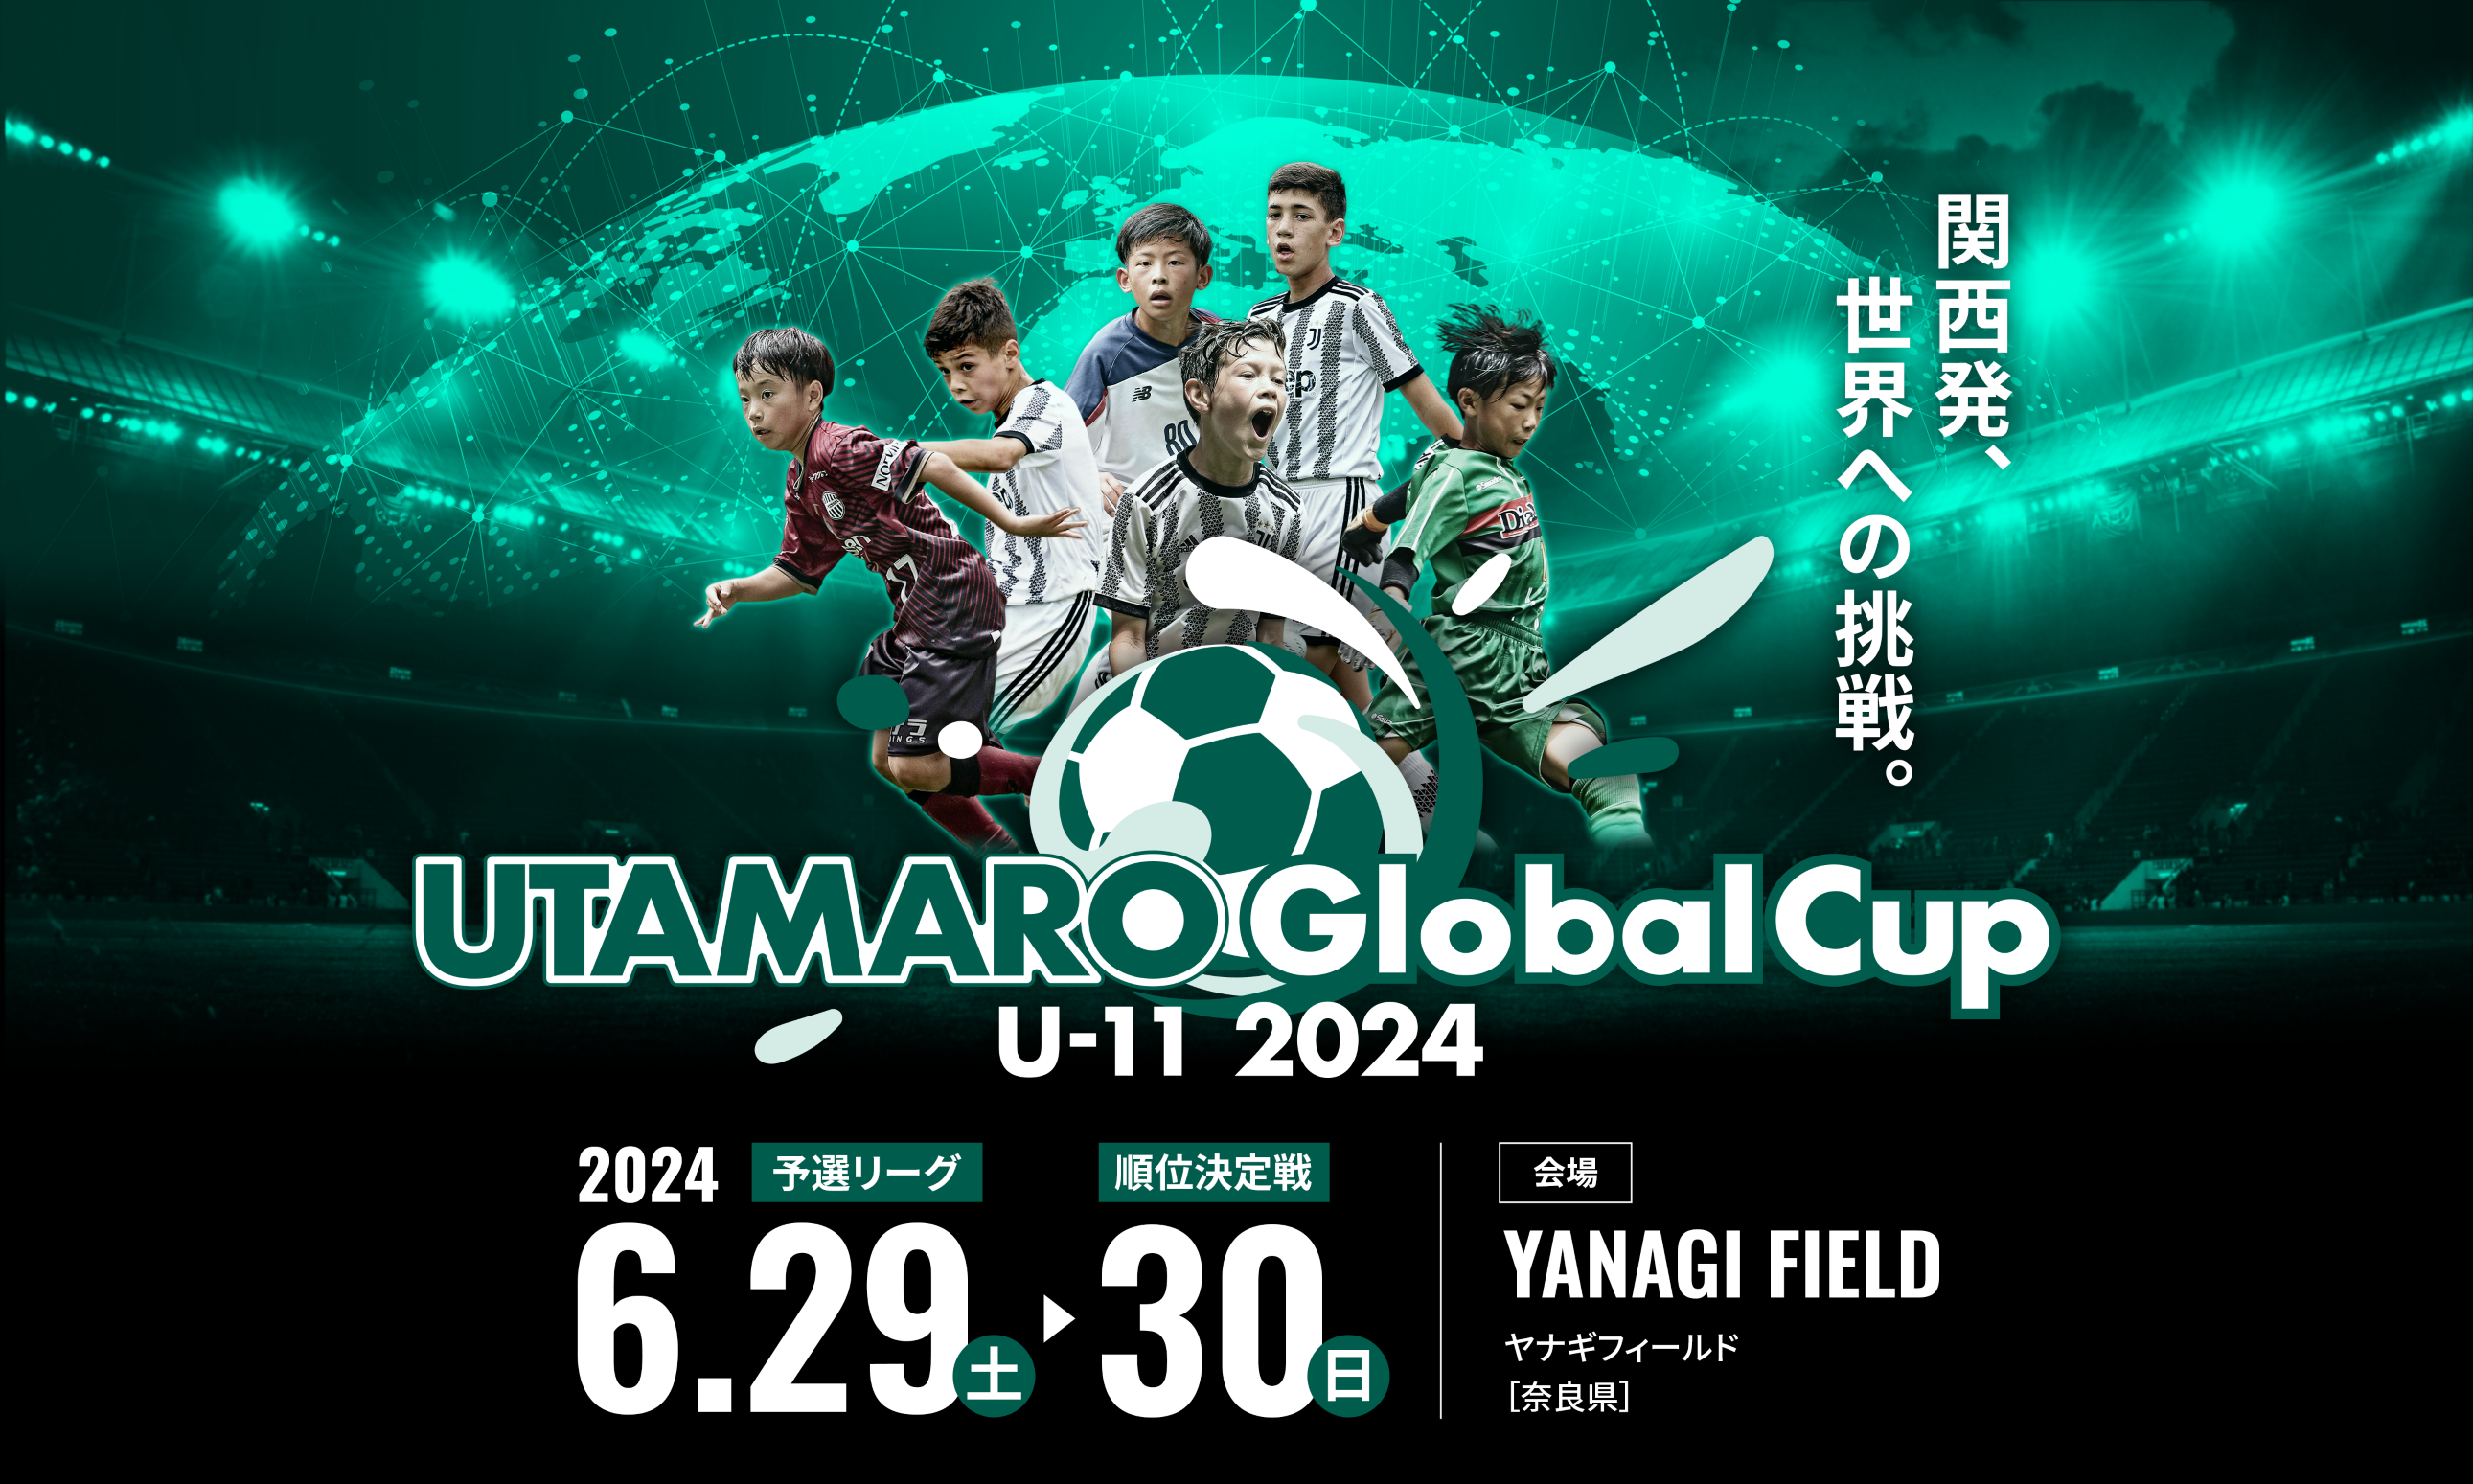 ザムストはジュニアサッカー大会「UTAMARO Global Cup U-11 2024」へ協賛